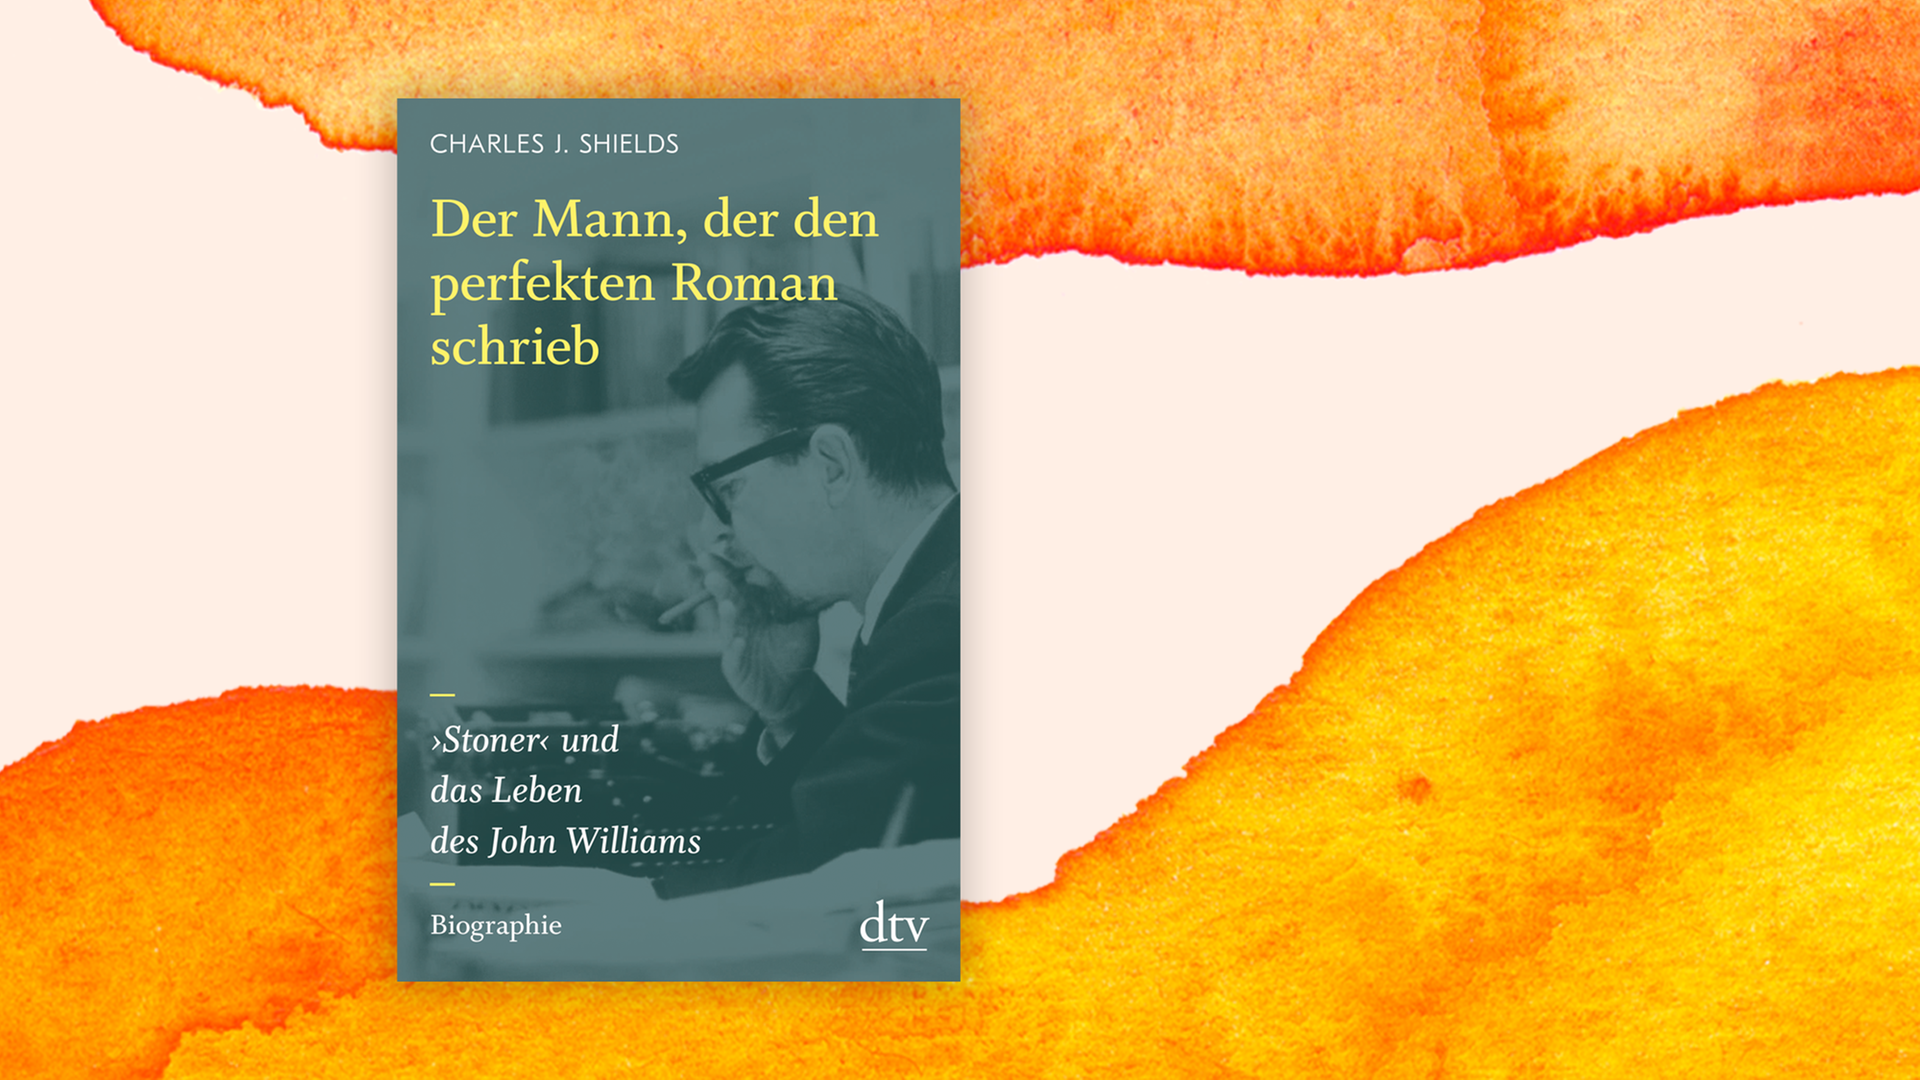 Buchcover von "Der Mann, der den perfekten Roman schrieb" von Charles J. Shields über das Leben von Johan Williams vor orangefarbenem Aquarell-Hintergrund.